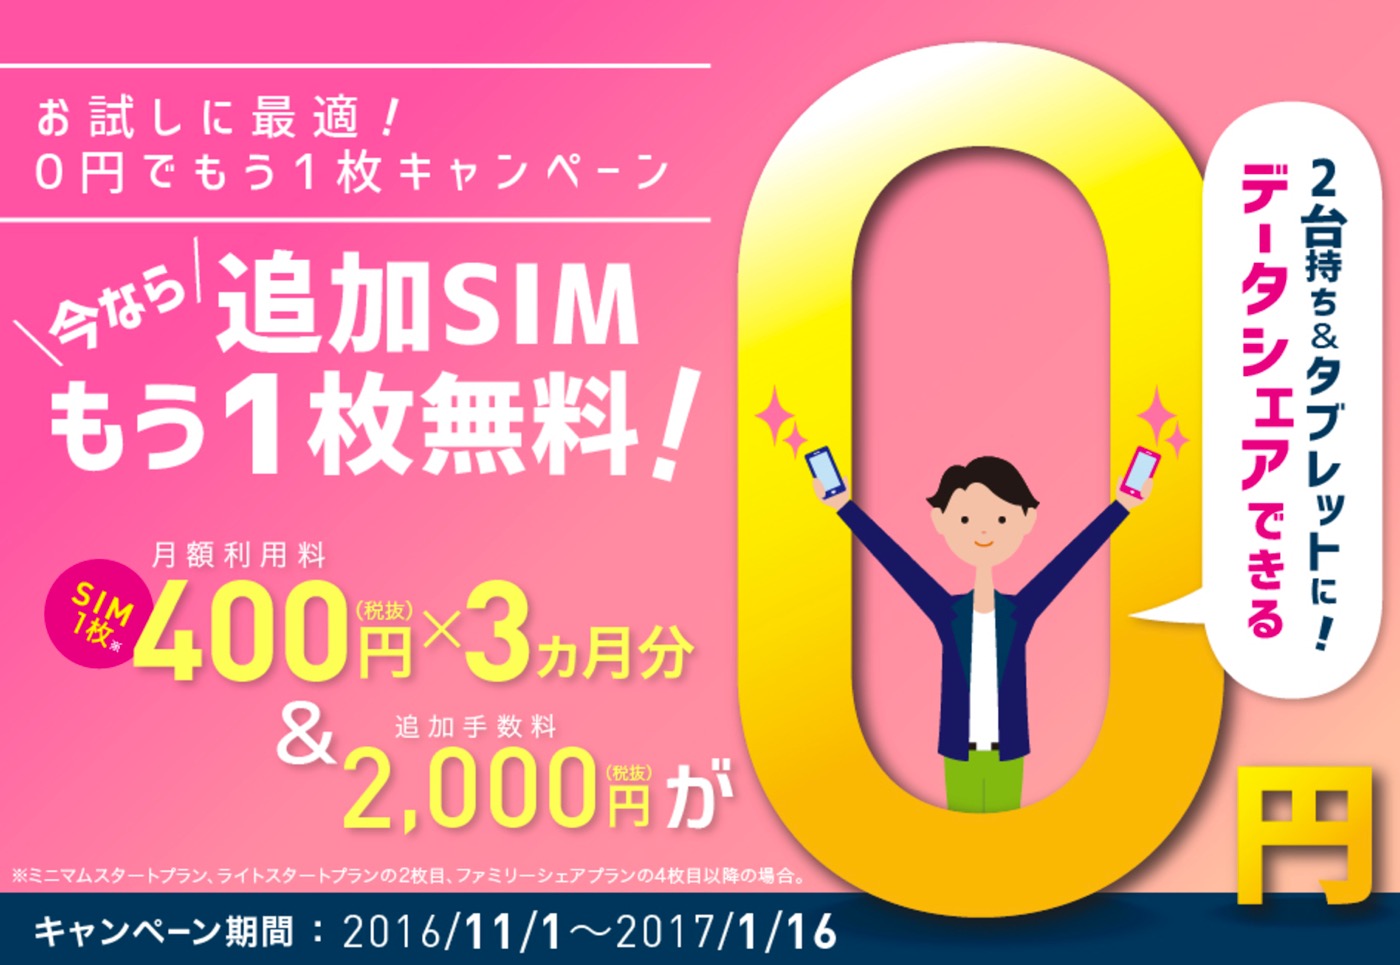 IIJmio、11月1日から｢0円でもう1枚キャンペーン｣と｢秋の0円でSIMサイズ変更キャンペーン｣を実施へ